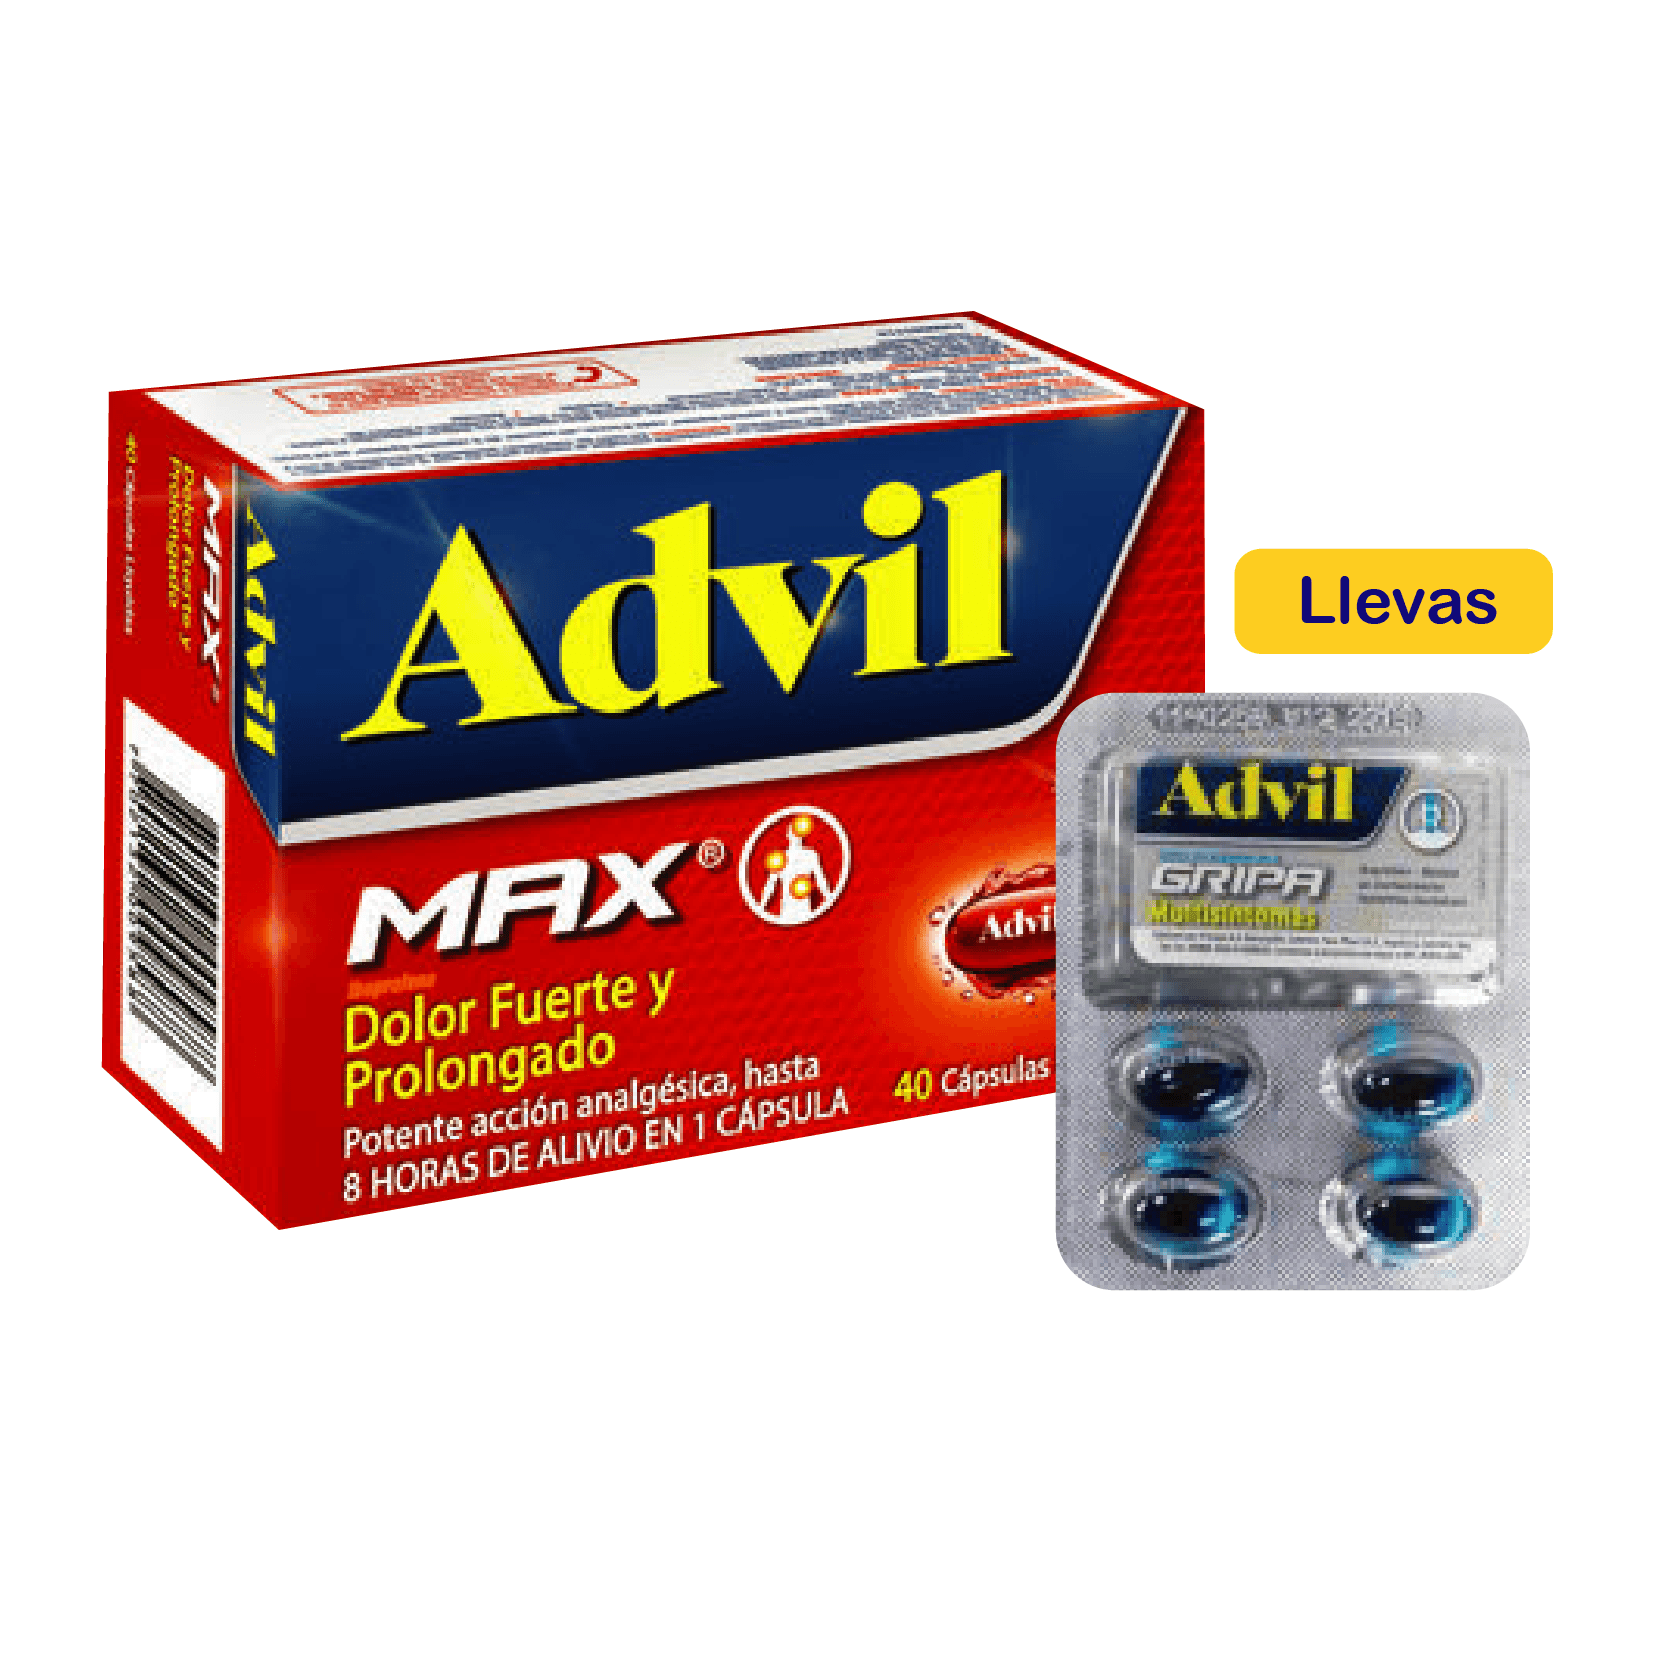 Advil Max x 40 Un Gratis Advil Gripa x 4 Un